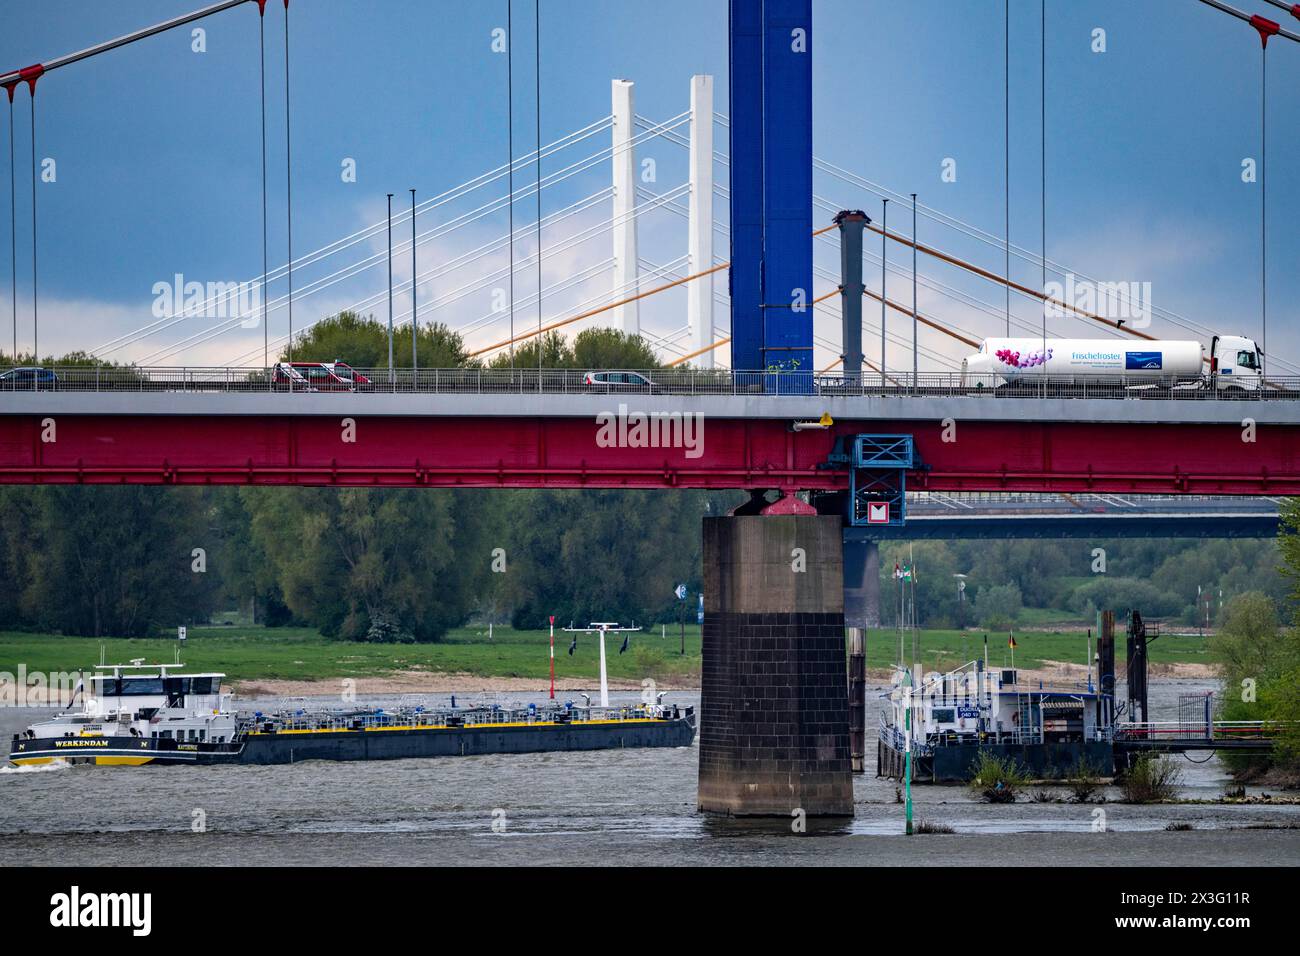 Frachtschiffe auf dem Rhein bei Duisburg, bei Ruhrort Hafen, Friedrich-Ebert-Brücke, hinter der Rheinbrücke Neuenkamp, A40, Neubau weiß, o Stockfoto